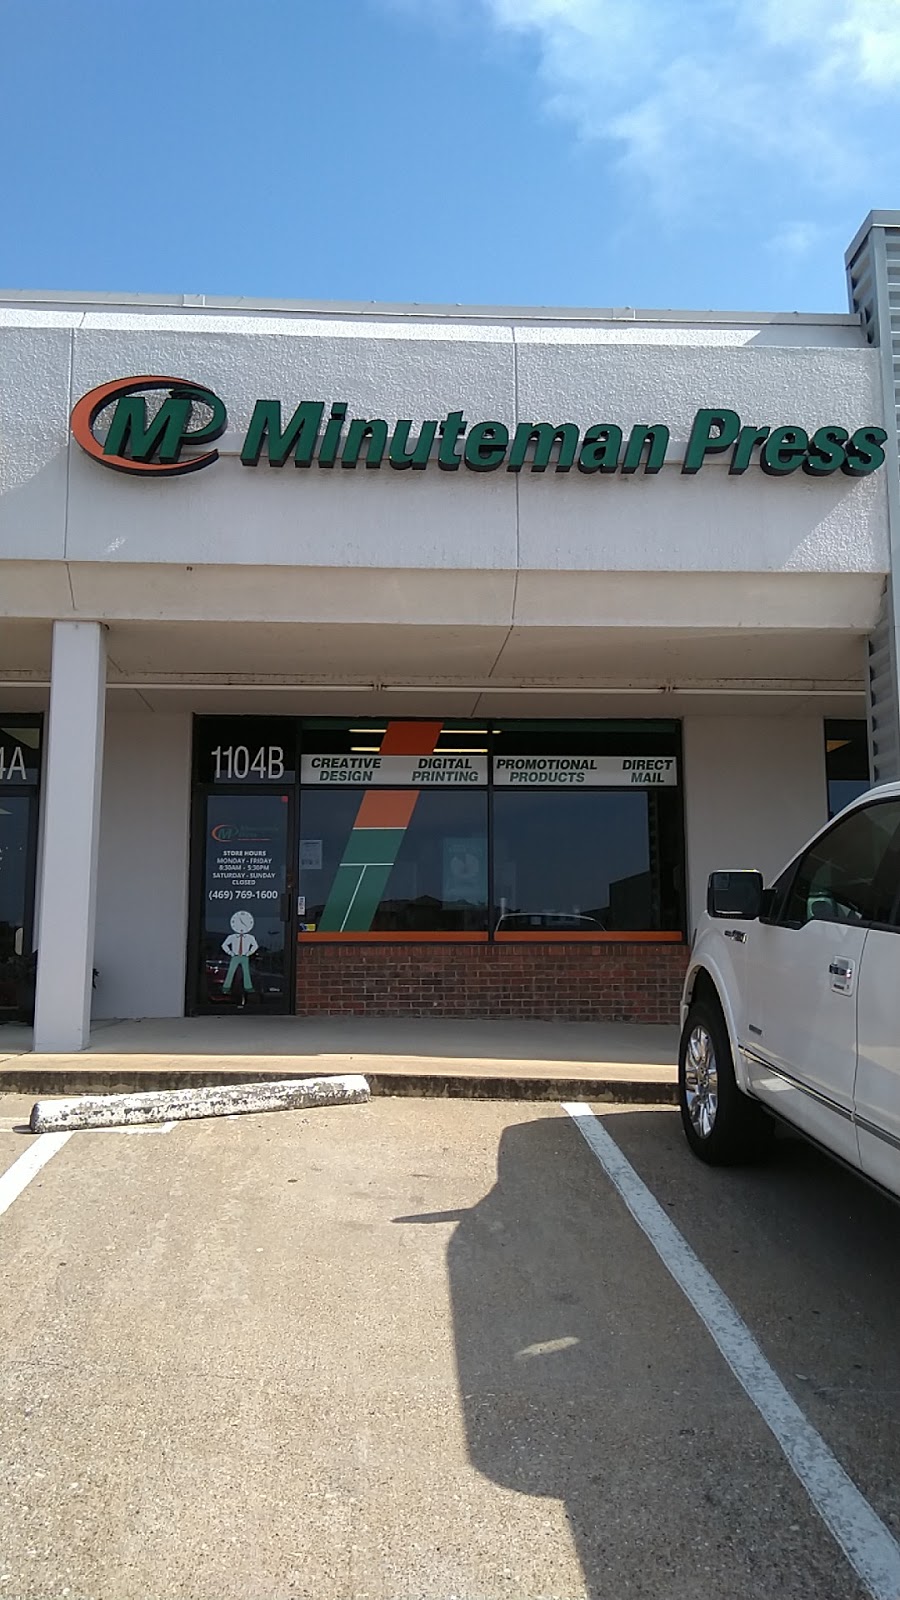 Minuteman Press Rockwall | 1104 B Ridge Rd, Rockwall, TX 75087 | Phone: (469) 769-1600